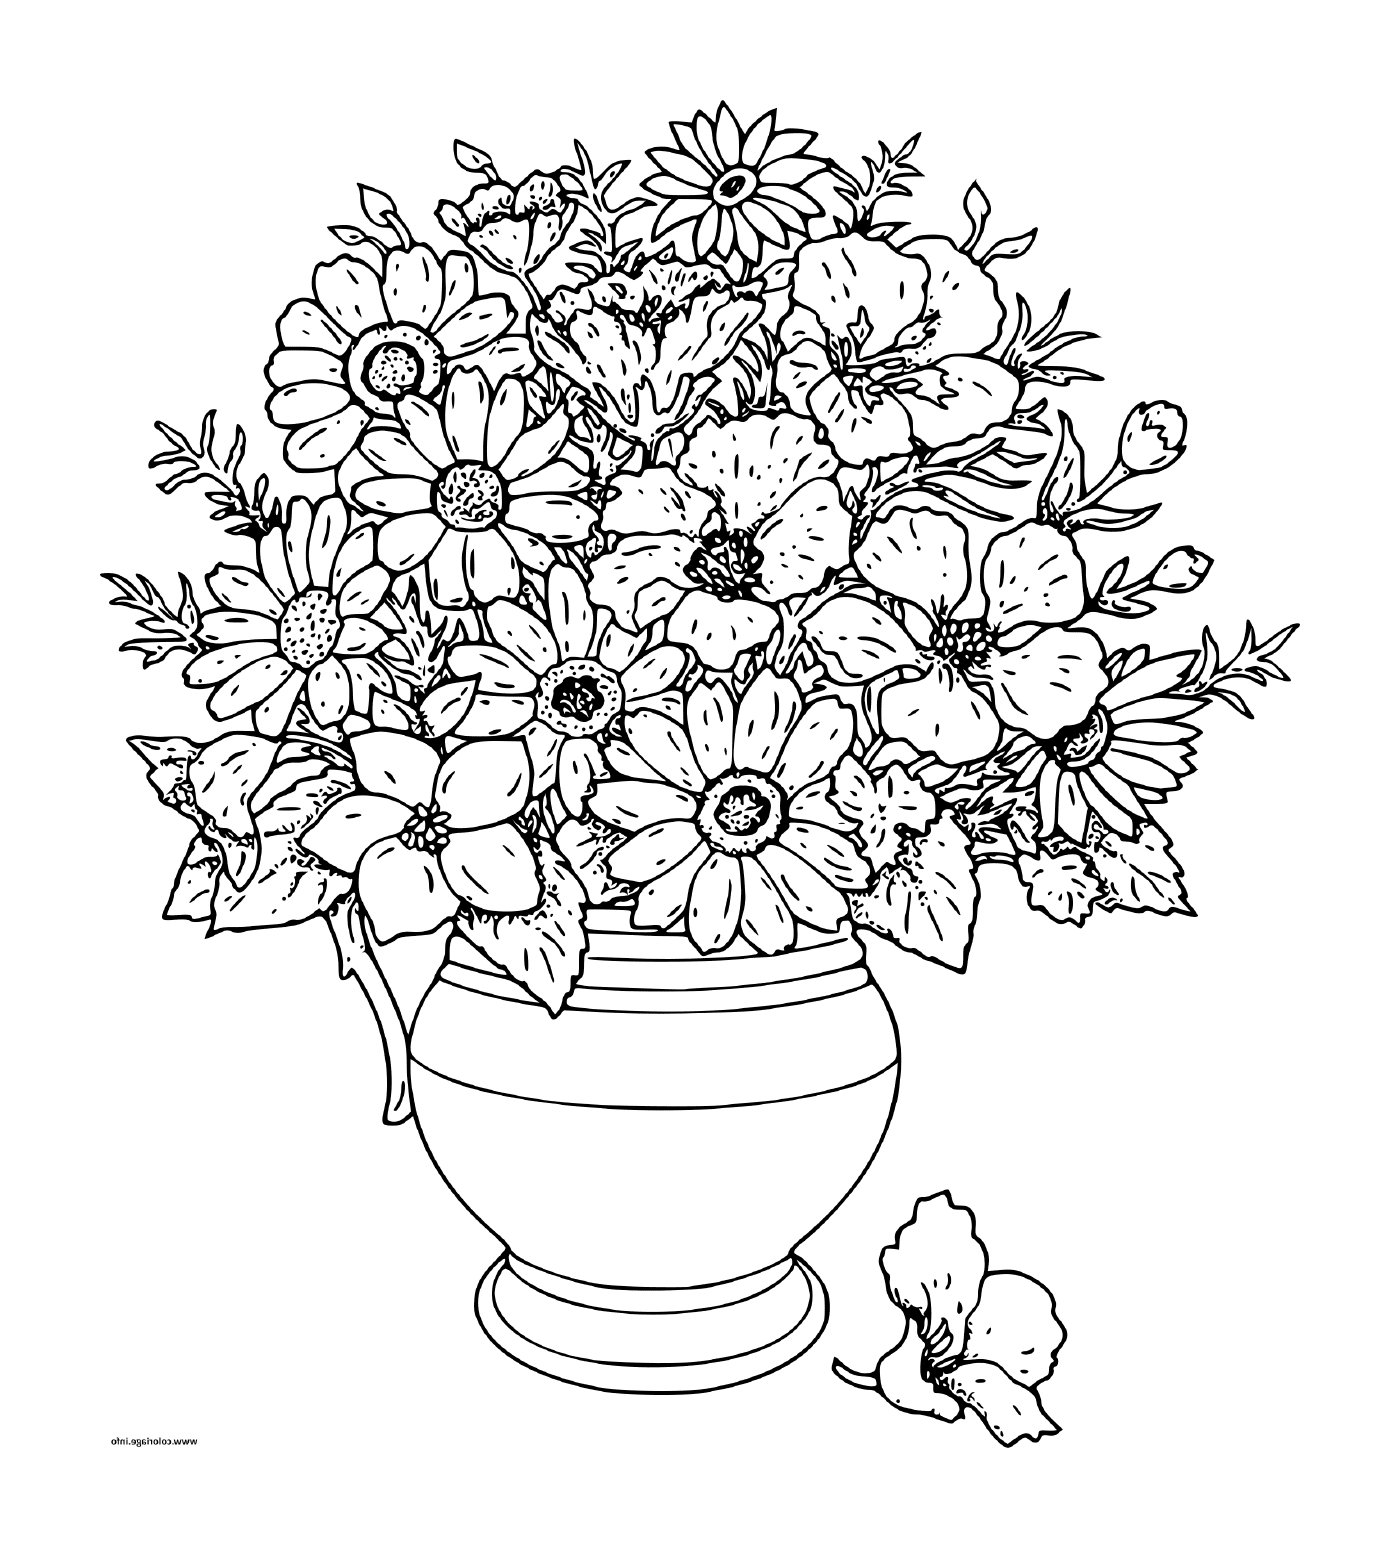  Un ramo de flores en un jarrón 